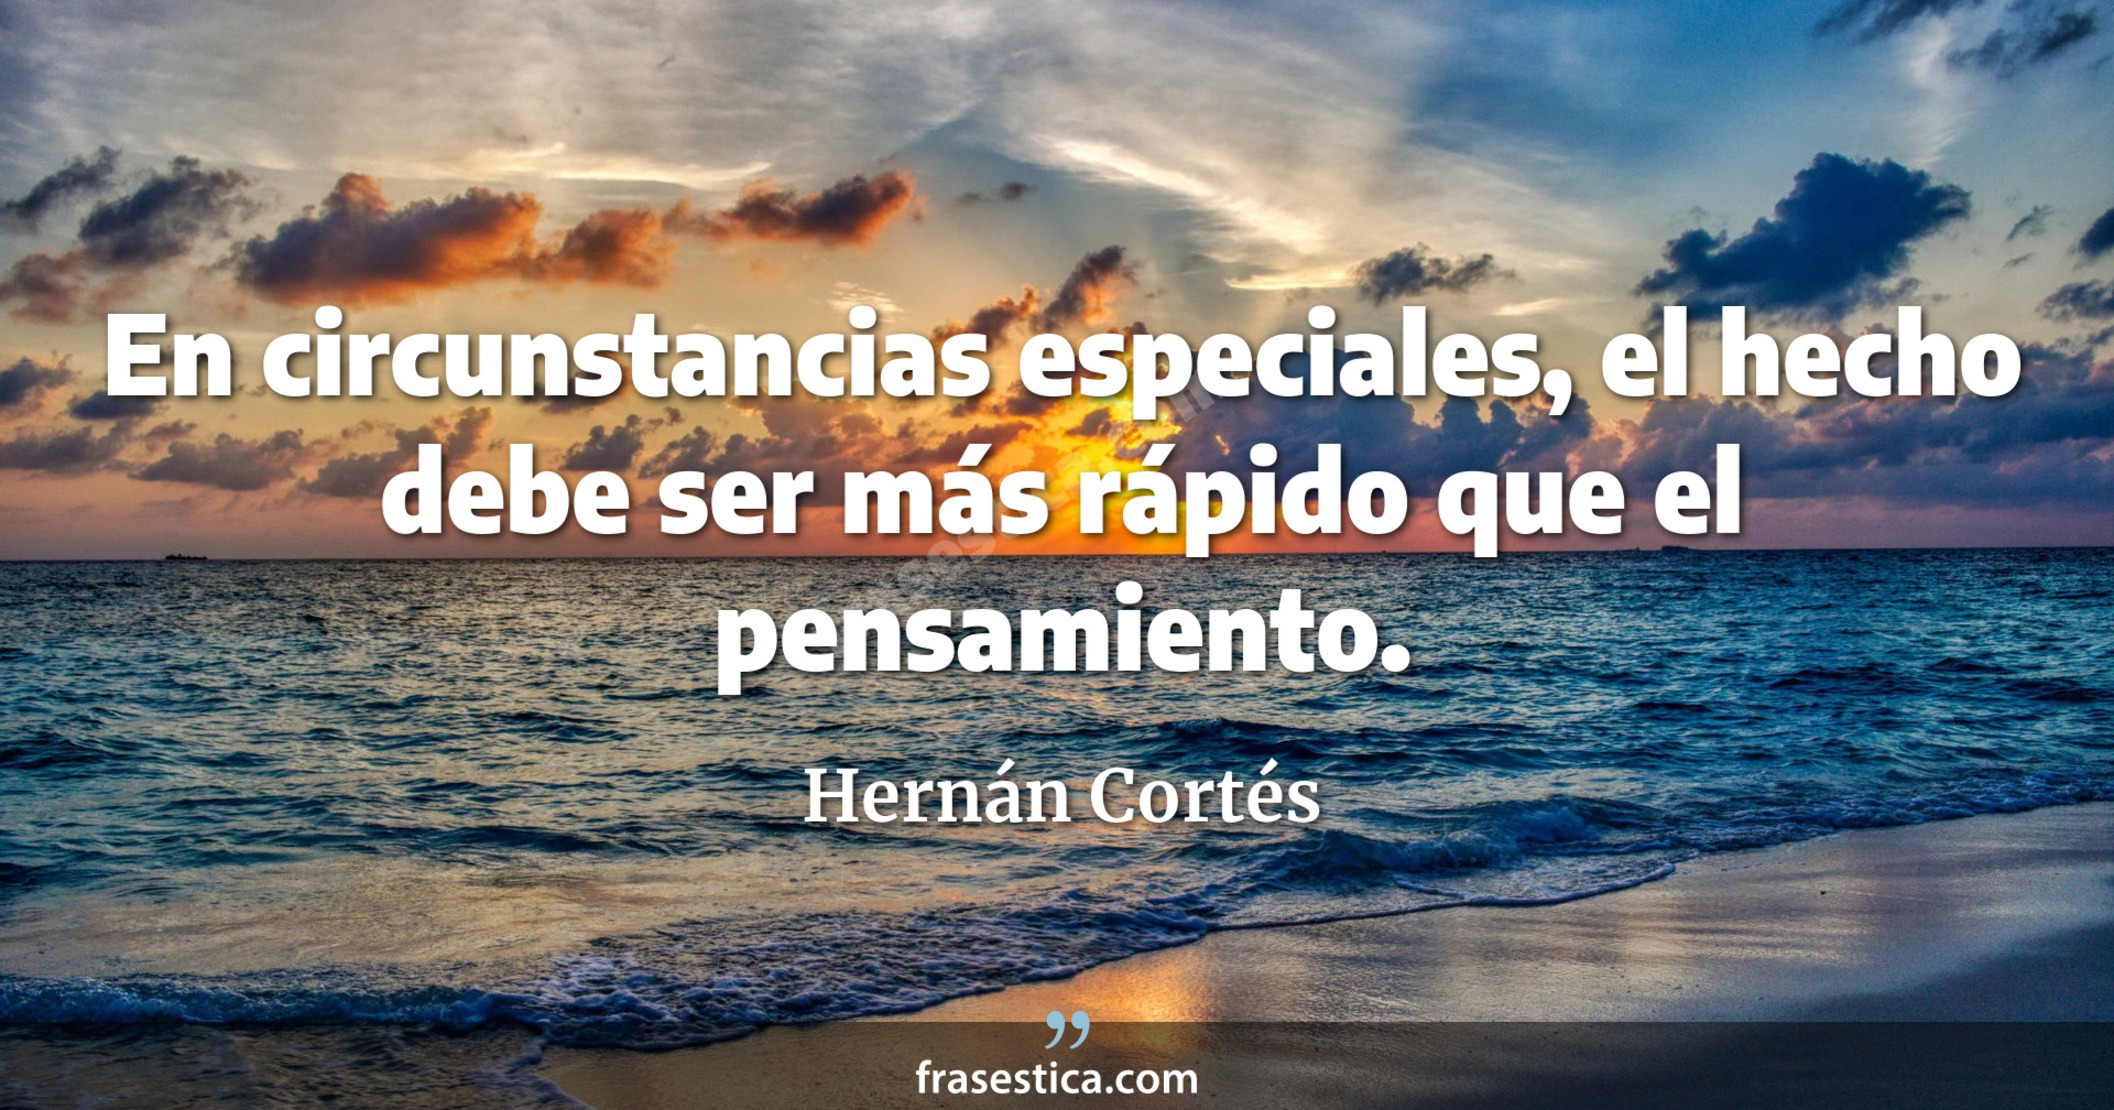 En circunstancias especiales, el hecho debe ser más rápido que el pensamiento. - Hernán Cortés